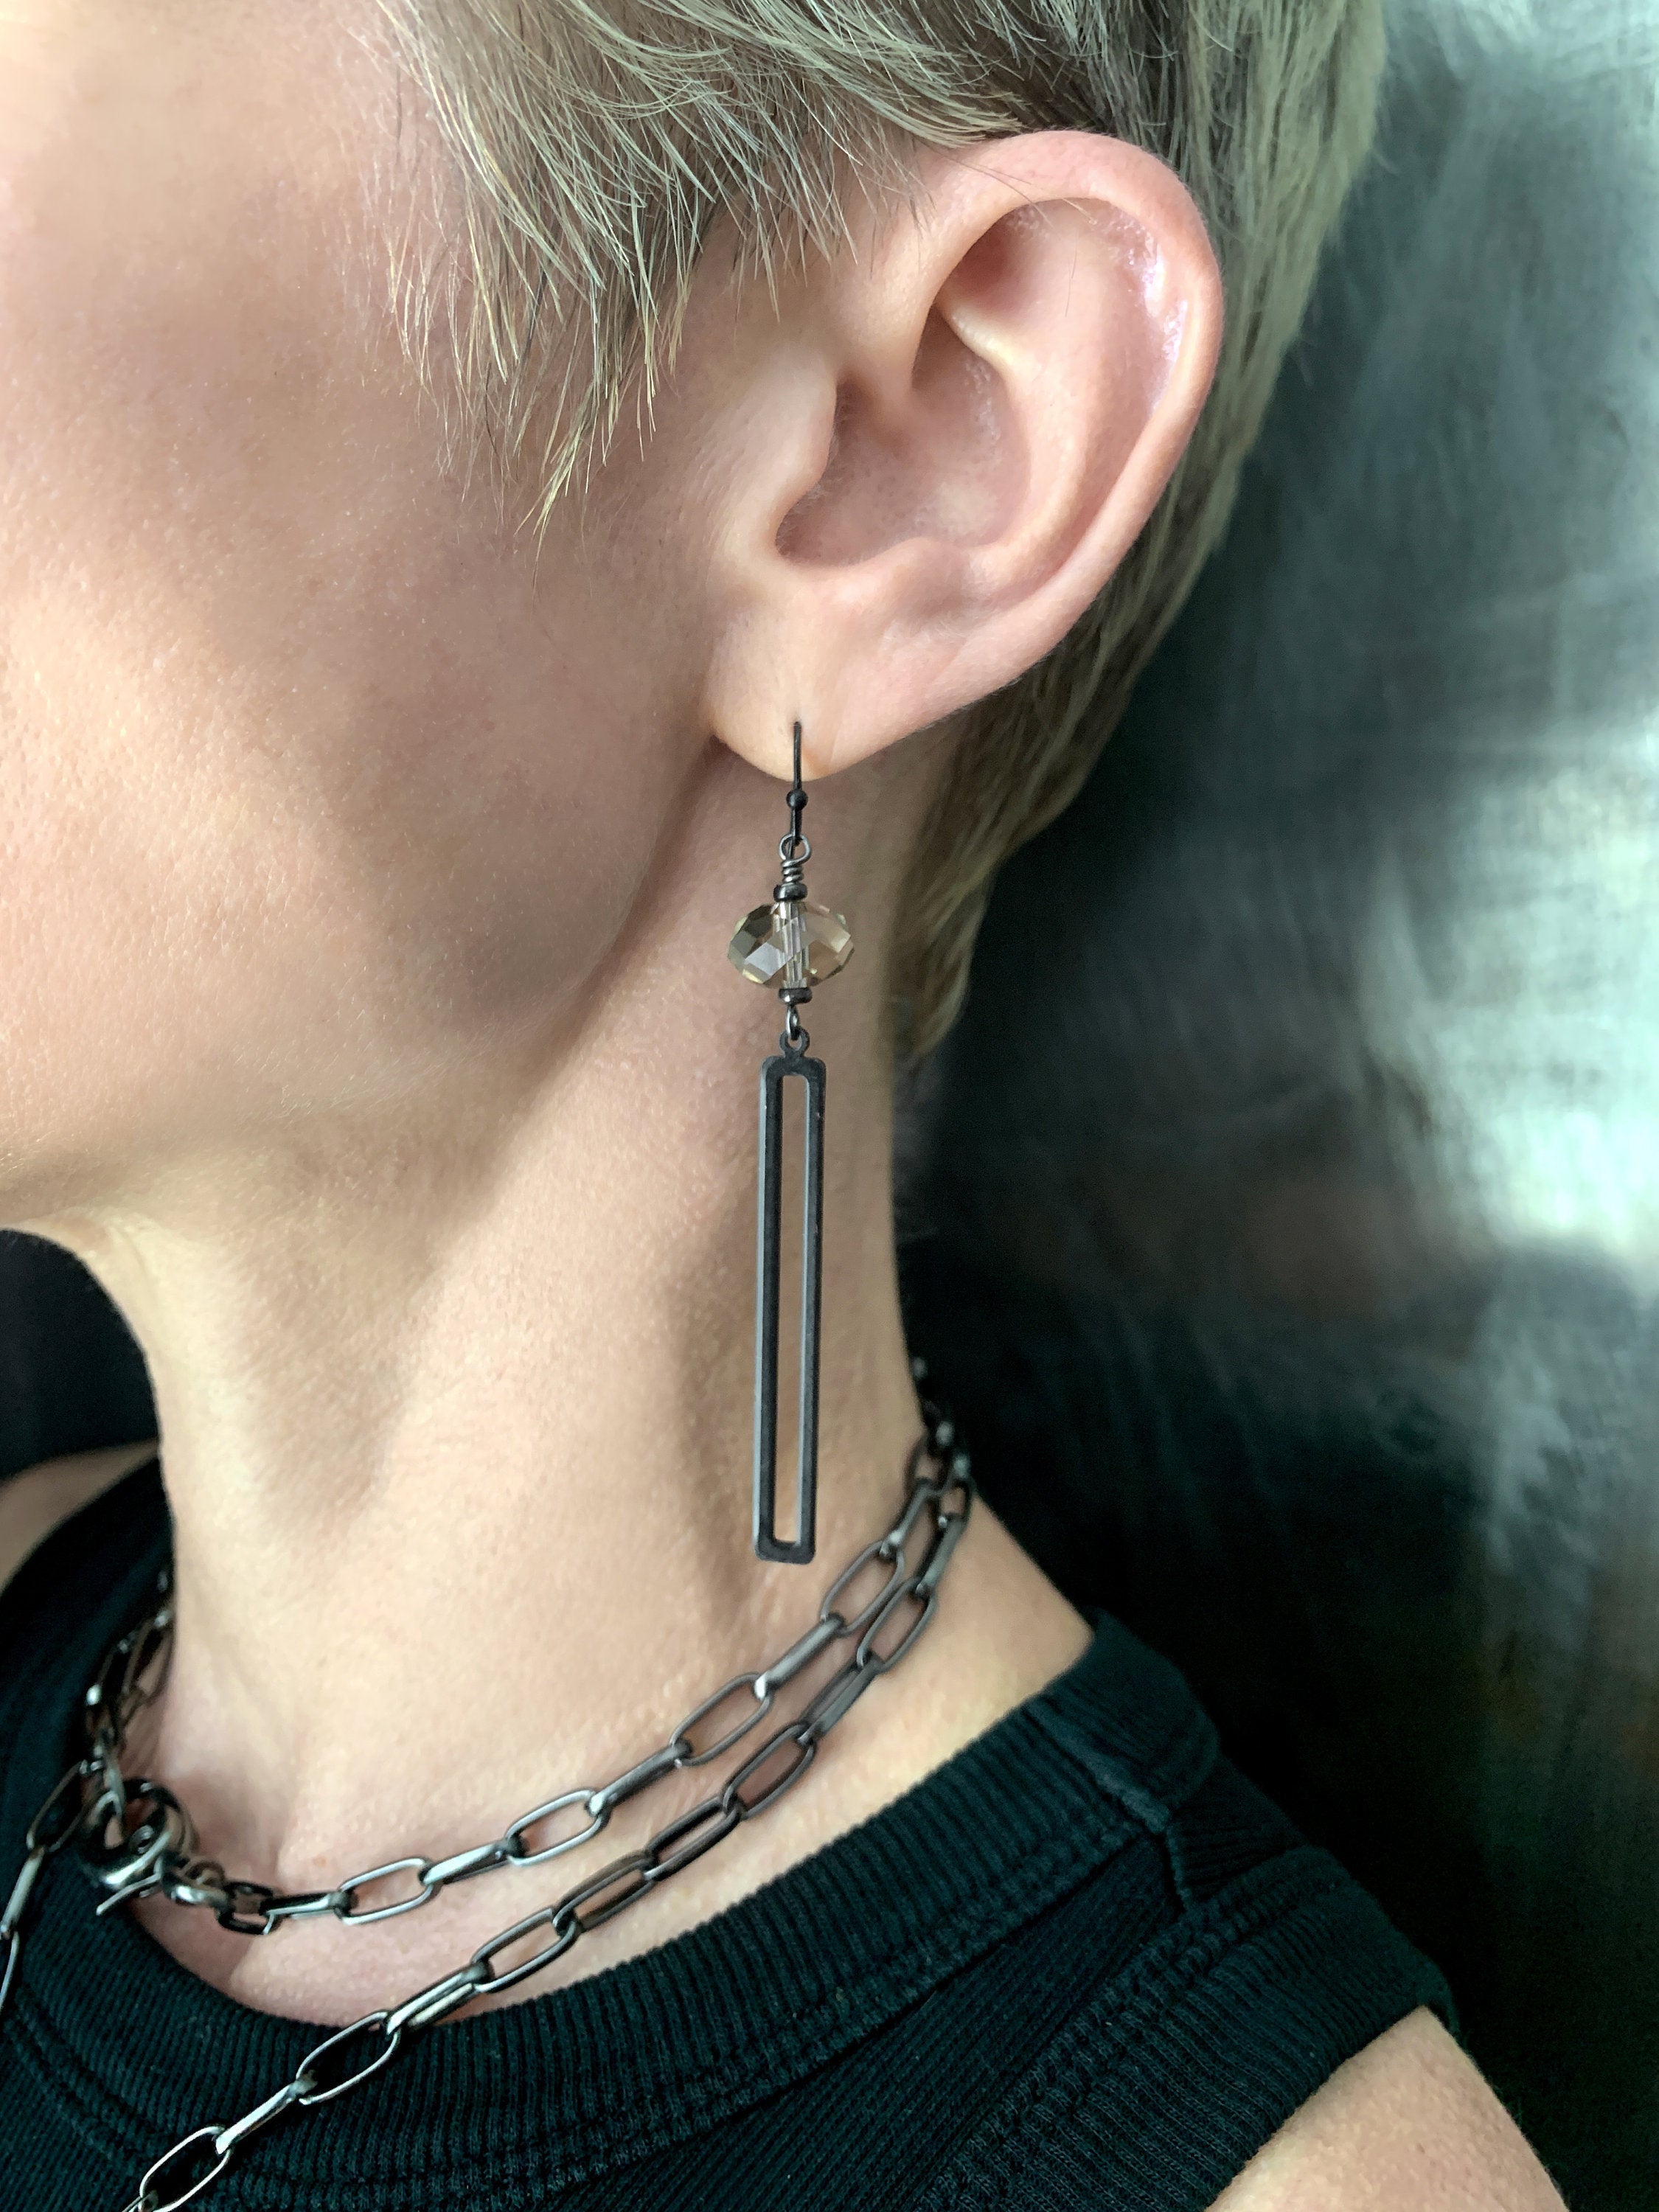 TECTONIC - Long Sleek Black Rectangle Earrings